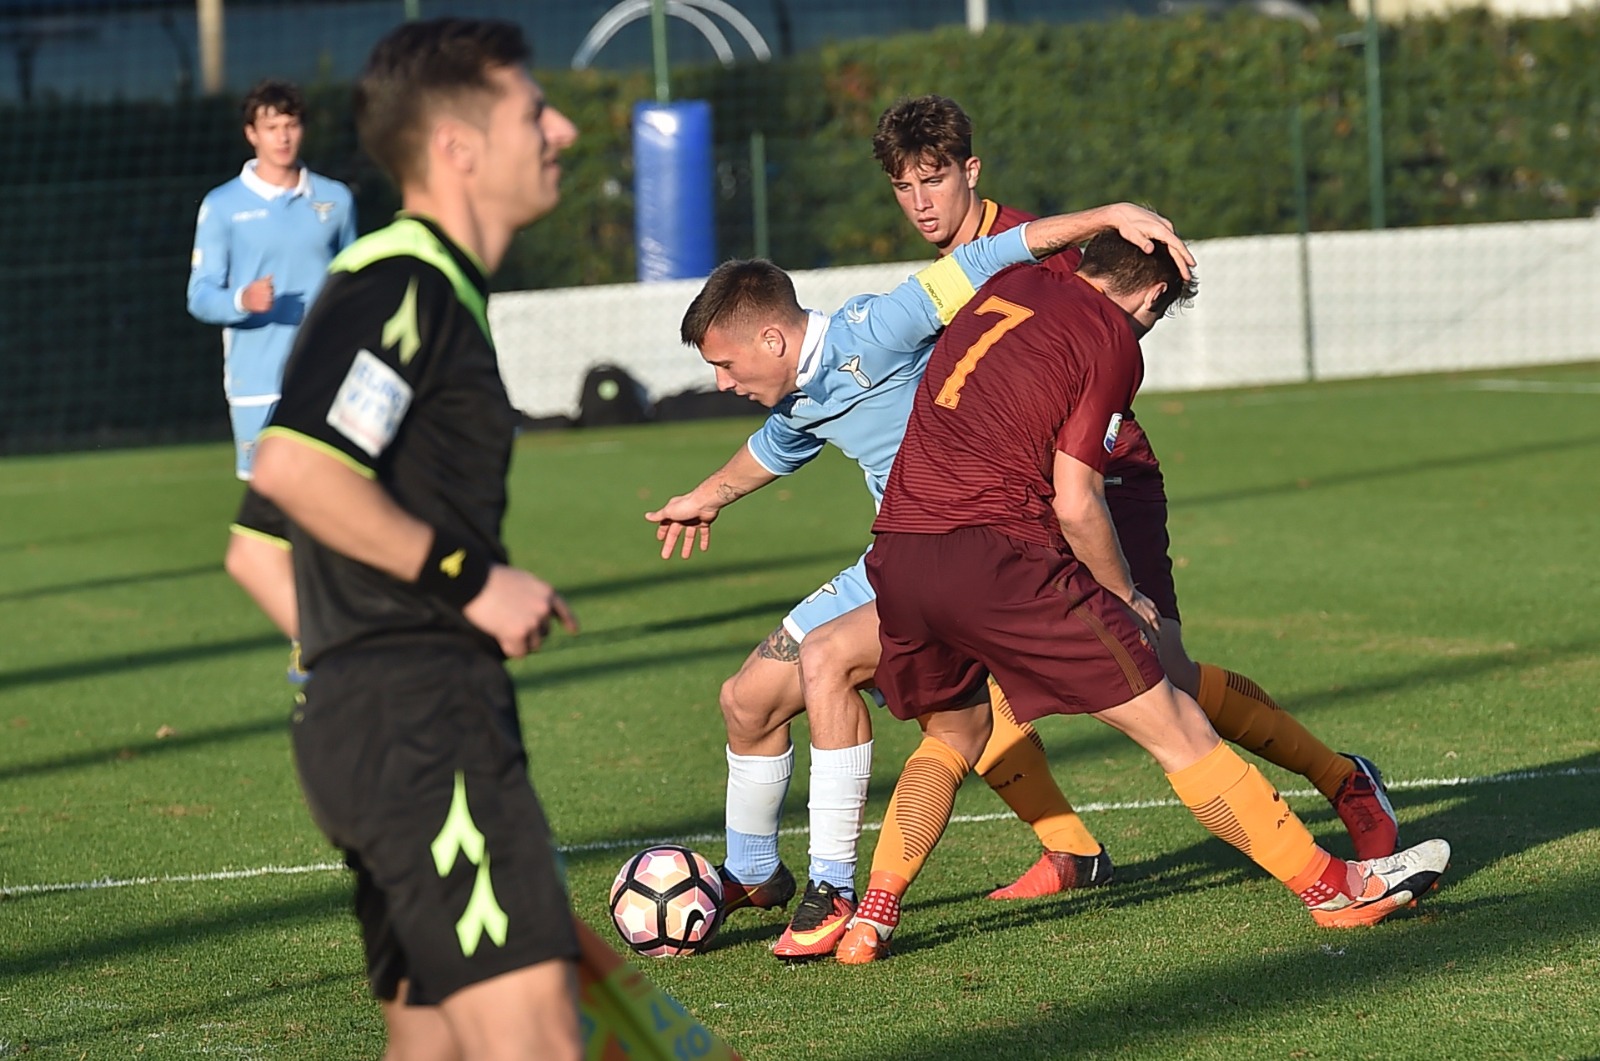 Coppa italia Primavera, strapotere giallorosso, Roma-Lazio 5-0, Soleri inarrestabile con tre gol